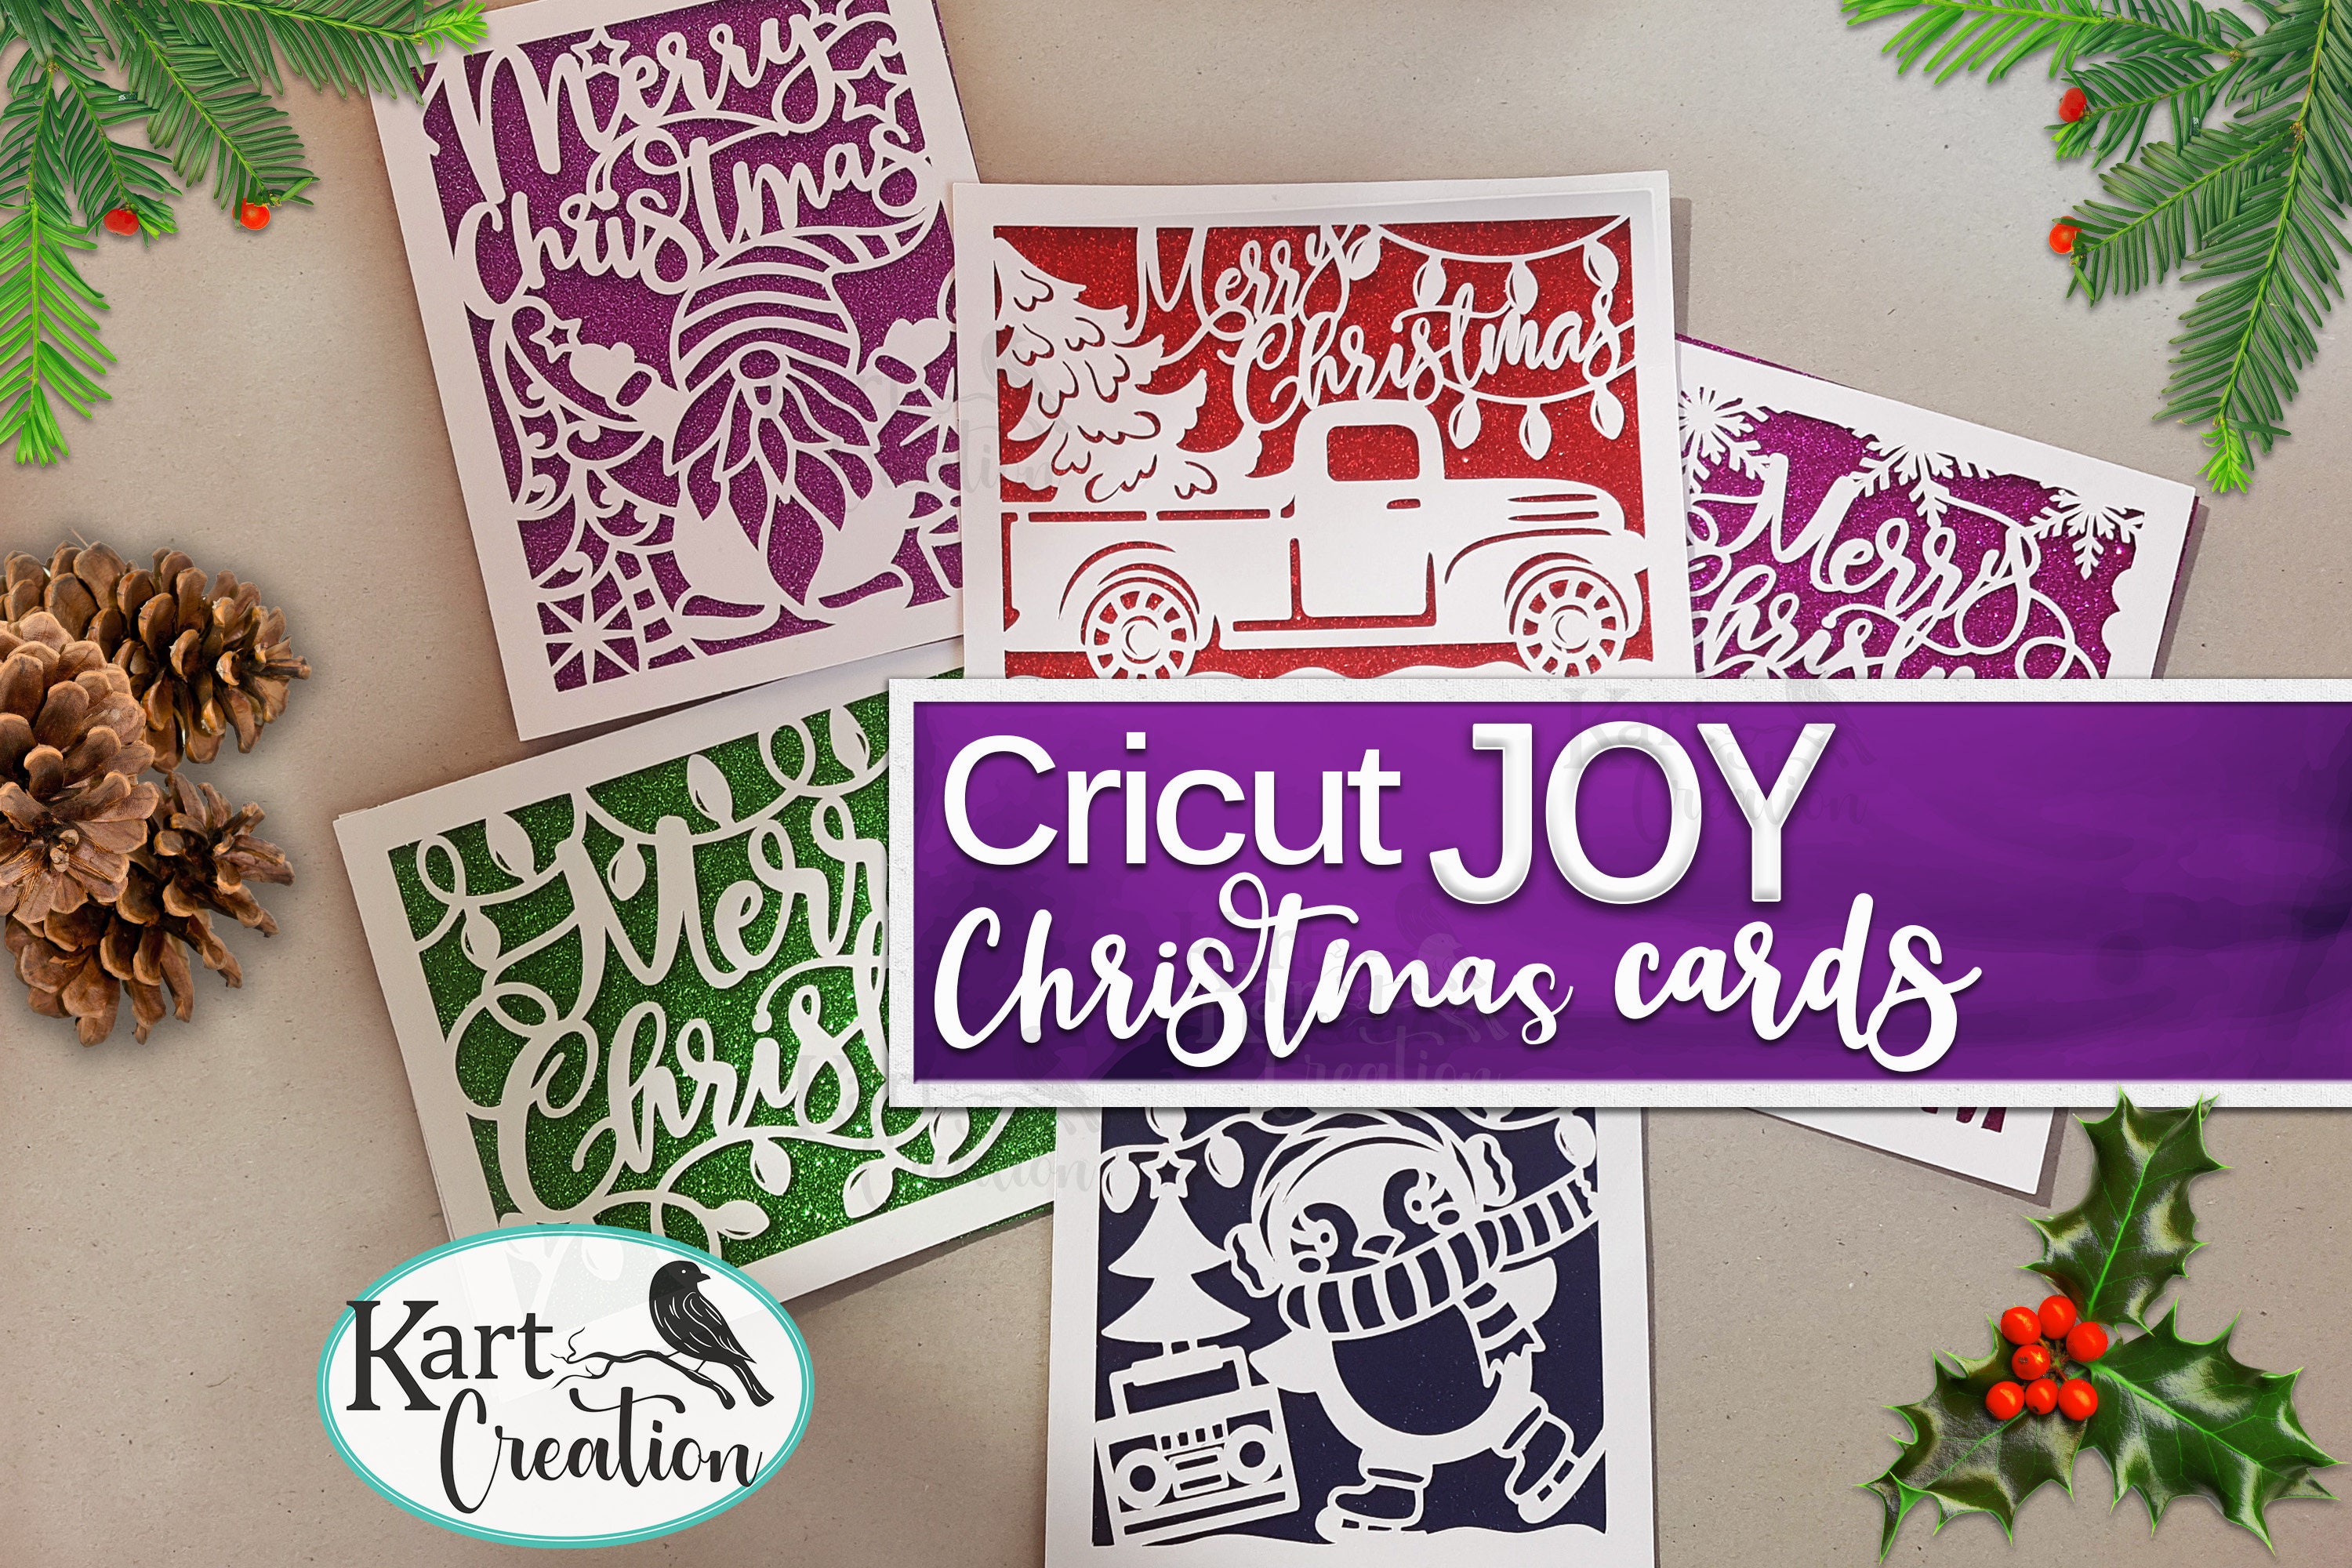 Easy Homemade Cards with Cricut Joy - Amy Latta Creations